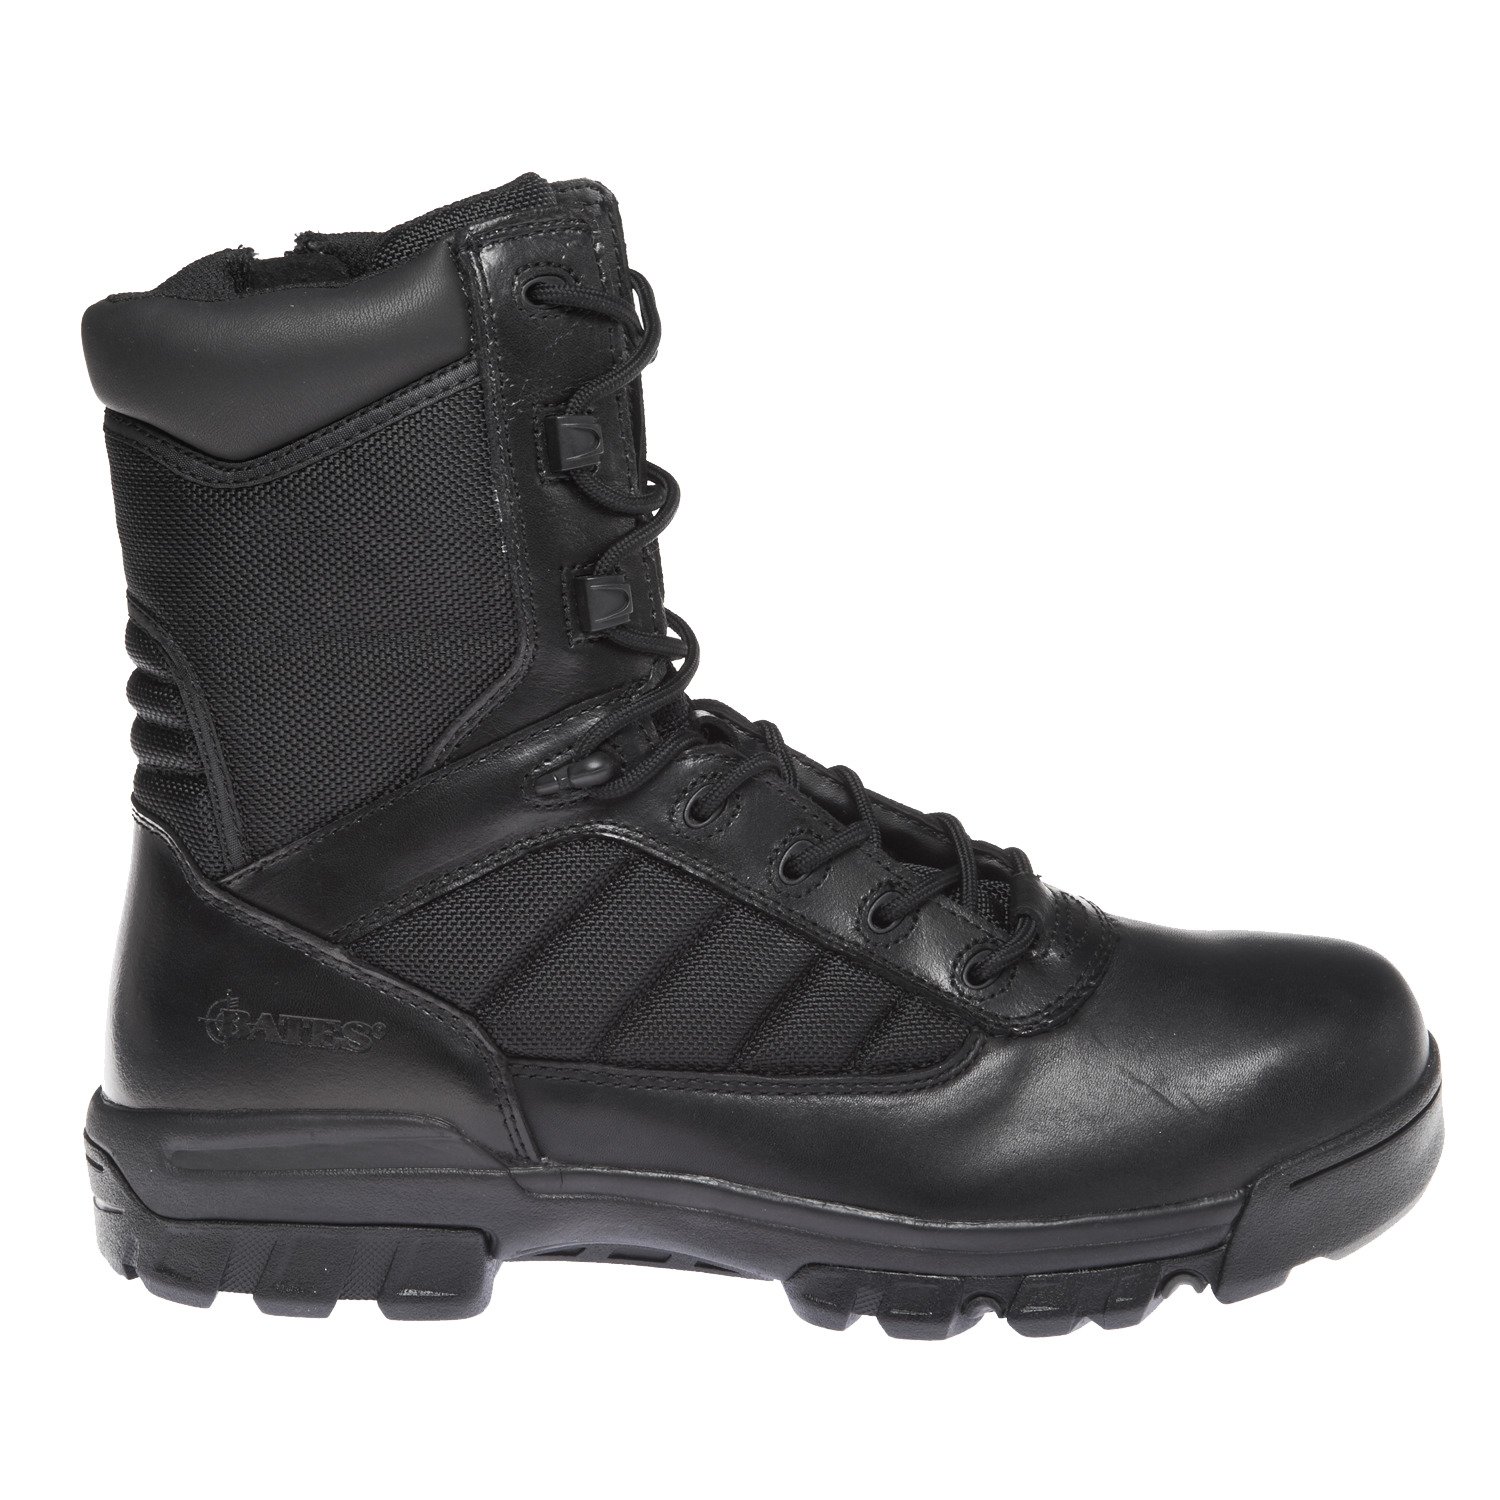 Men's Tactical Boots | Men's Combat Boots, Army Boots, Men's ...